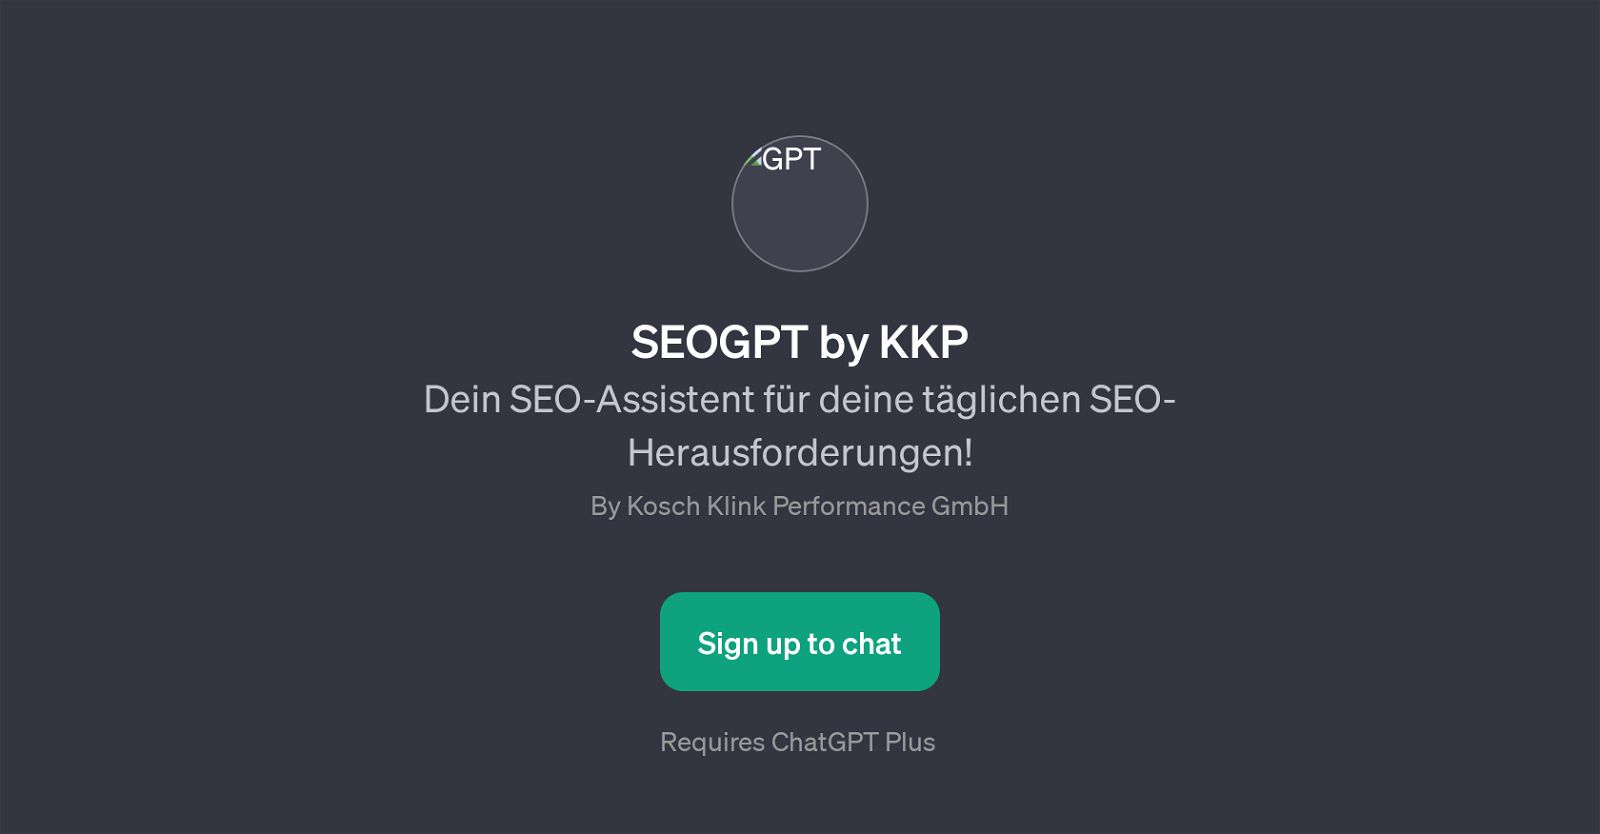 SEOGPT by KKP website